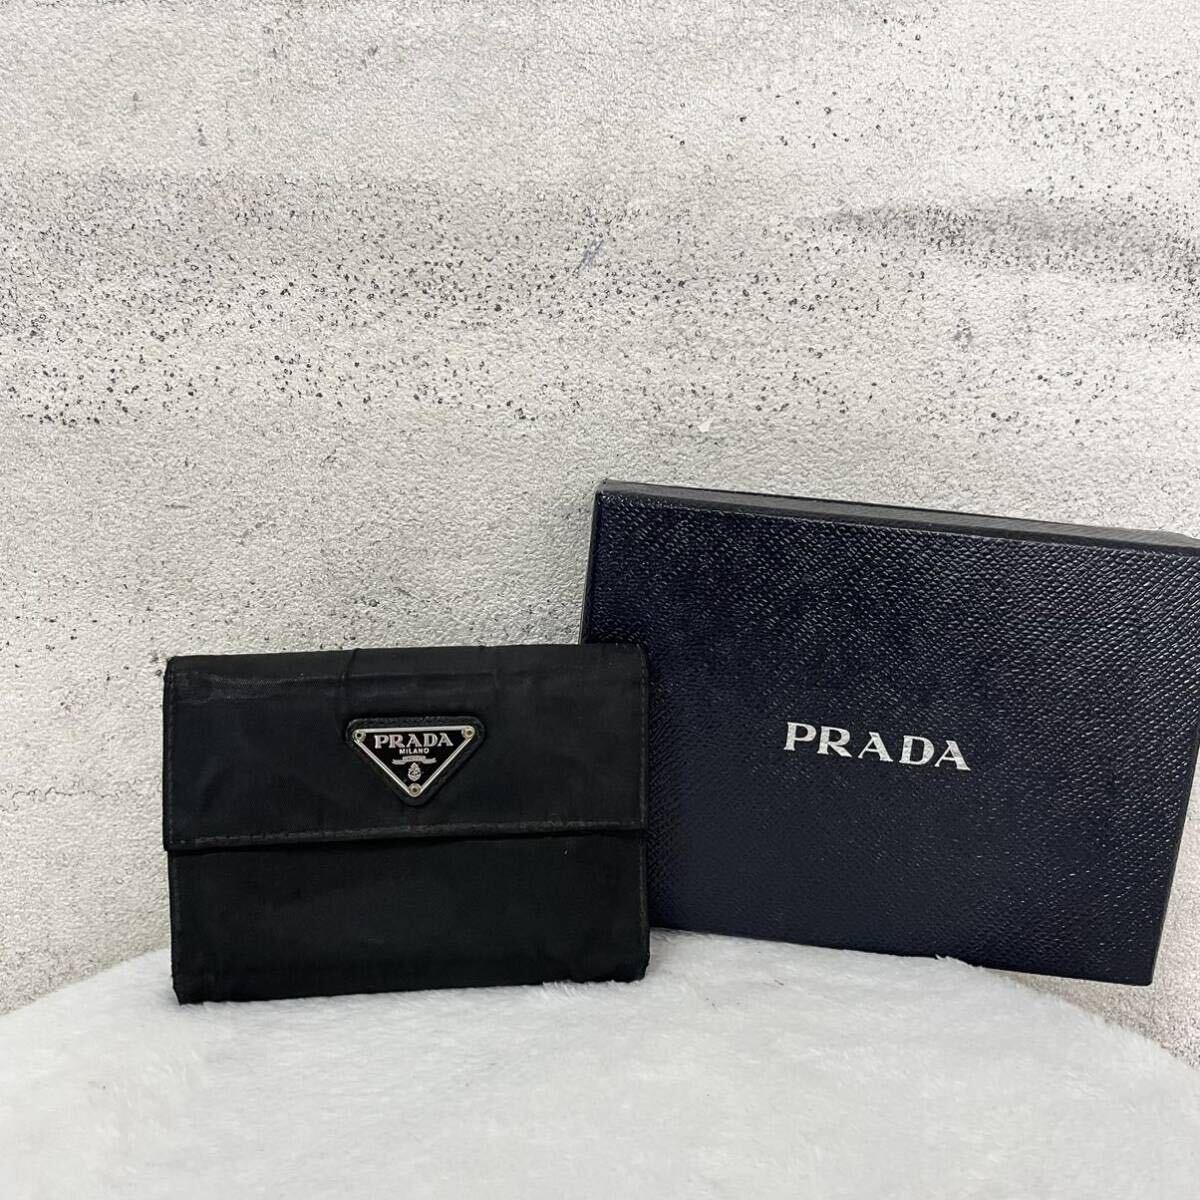 【贅沢品の極み】PRADA プラダ 折り財布 カードケース コインケース 三角プレート ナイロン 本革 レザー サフィアーノ ブラック の画像1